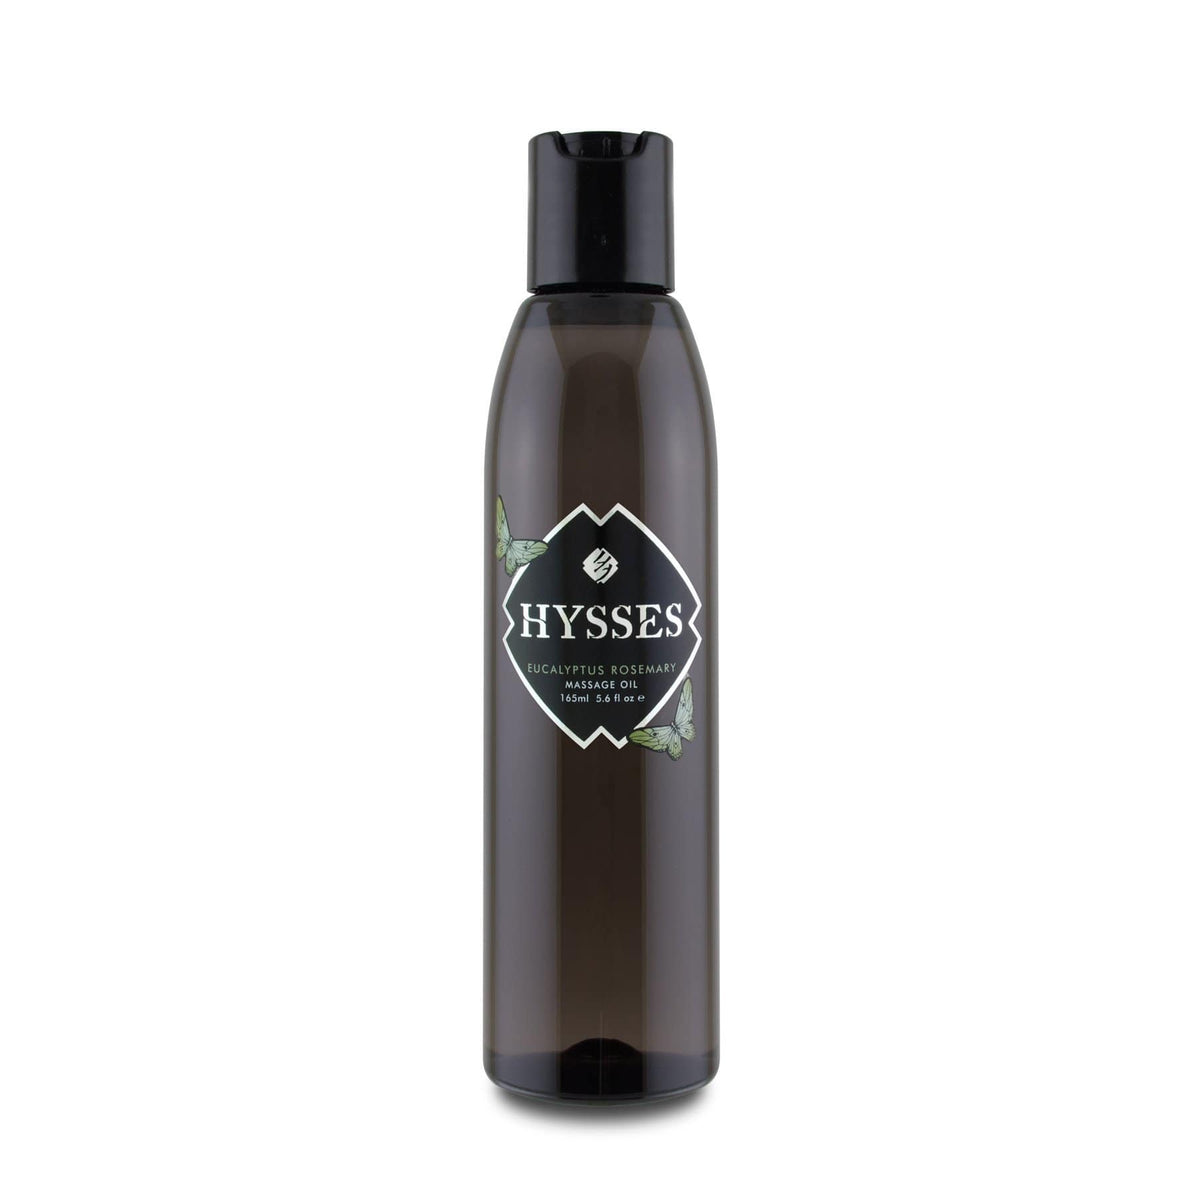 Hysses Body Care Massage Oil Eucalyptus Rosemary